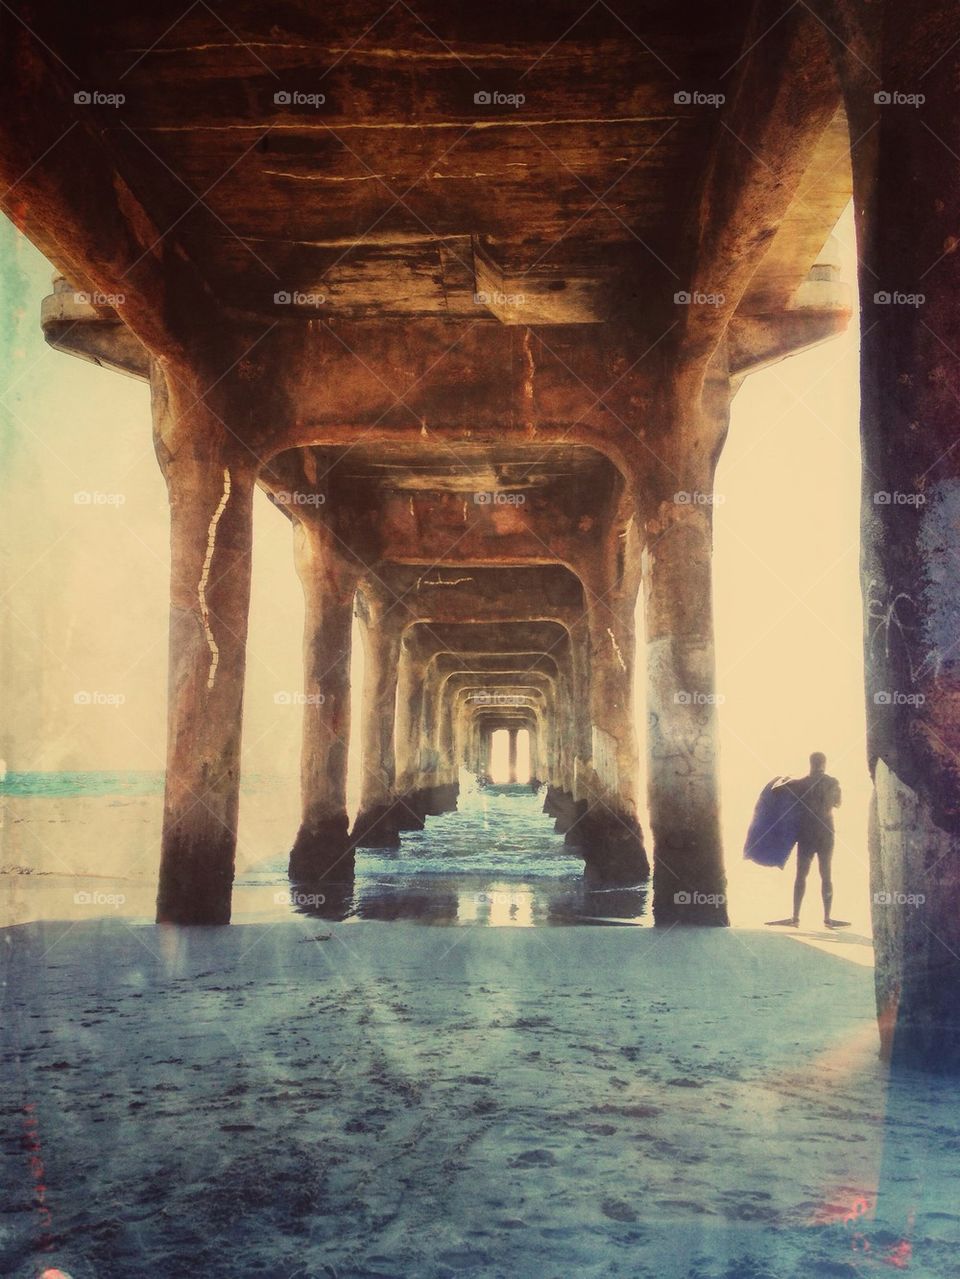 Under the boardwalk